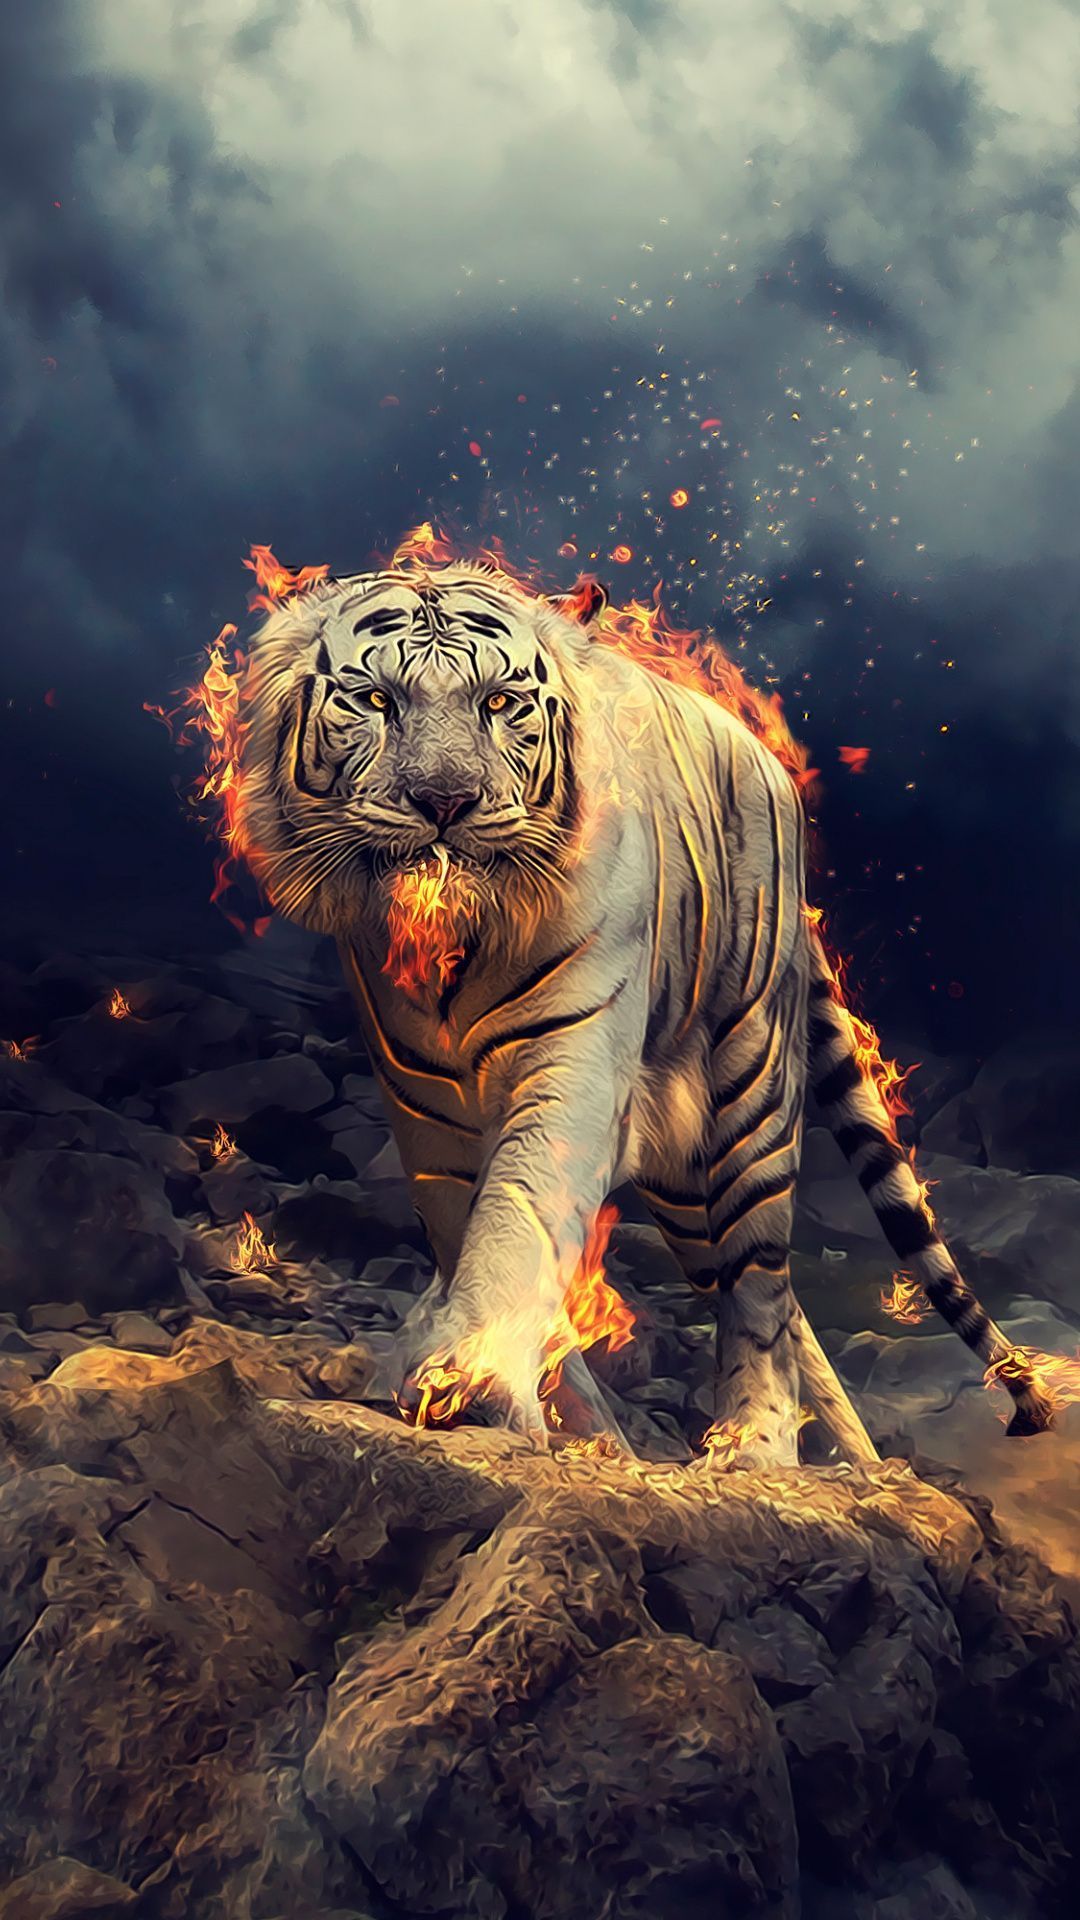 Angry tiger×1920 wallpaper. Tiger wallpaper, Animal wallpaper, Wild animal wallpaper